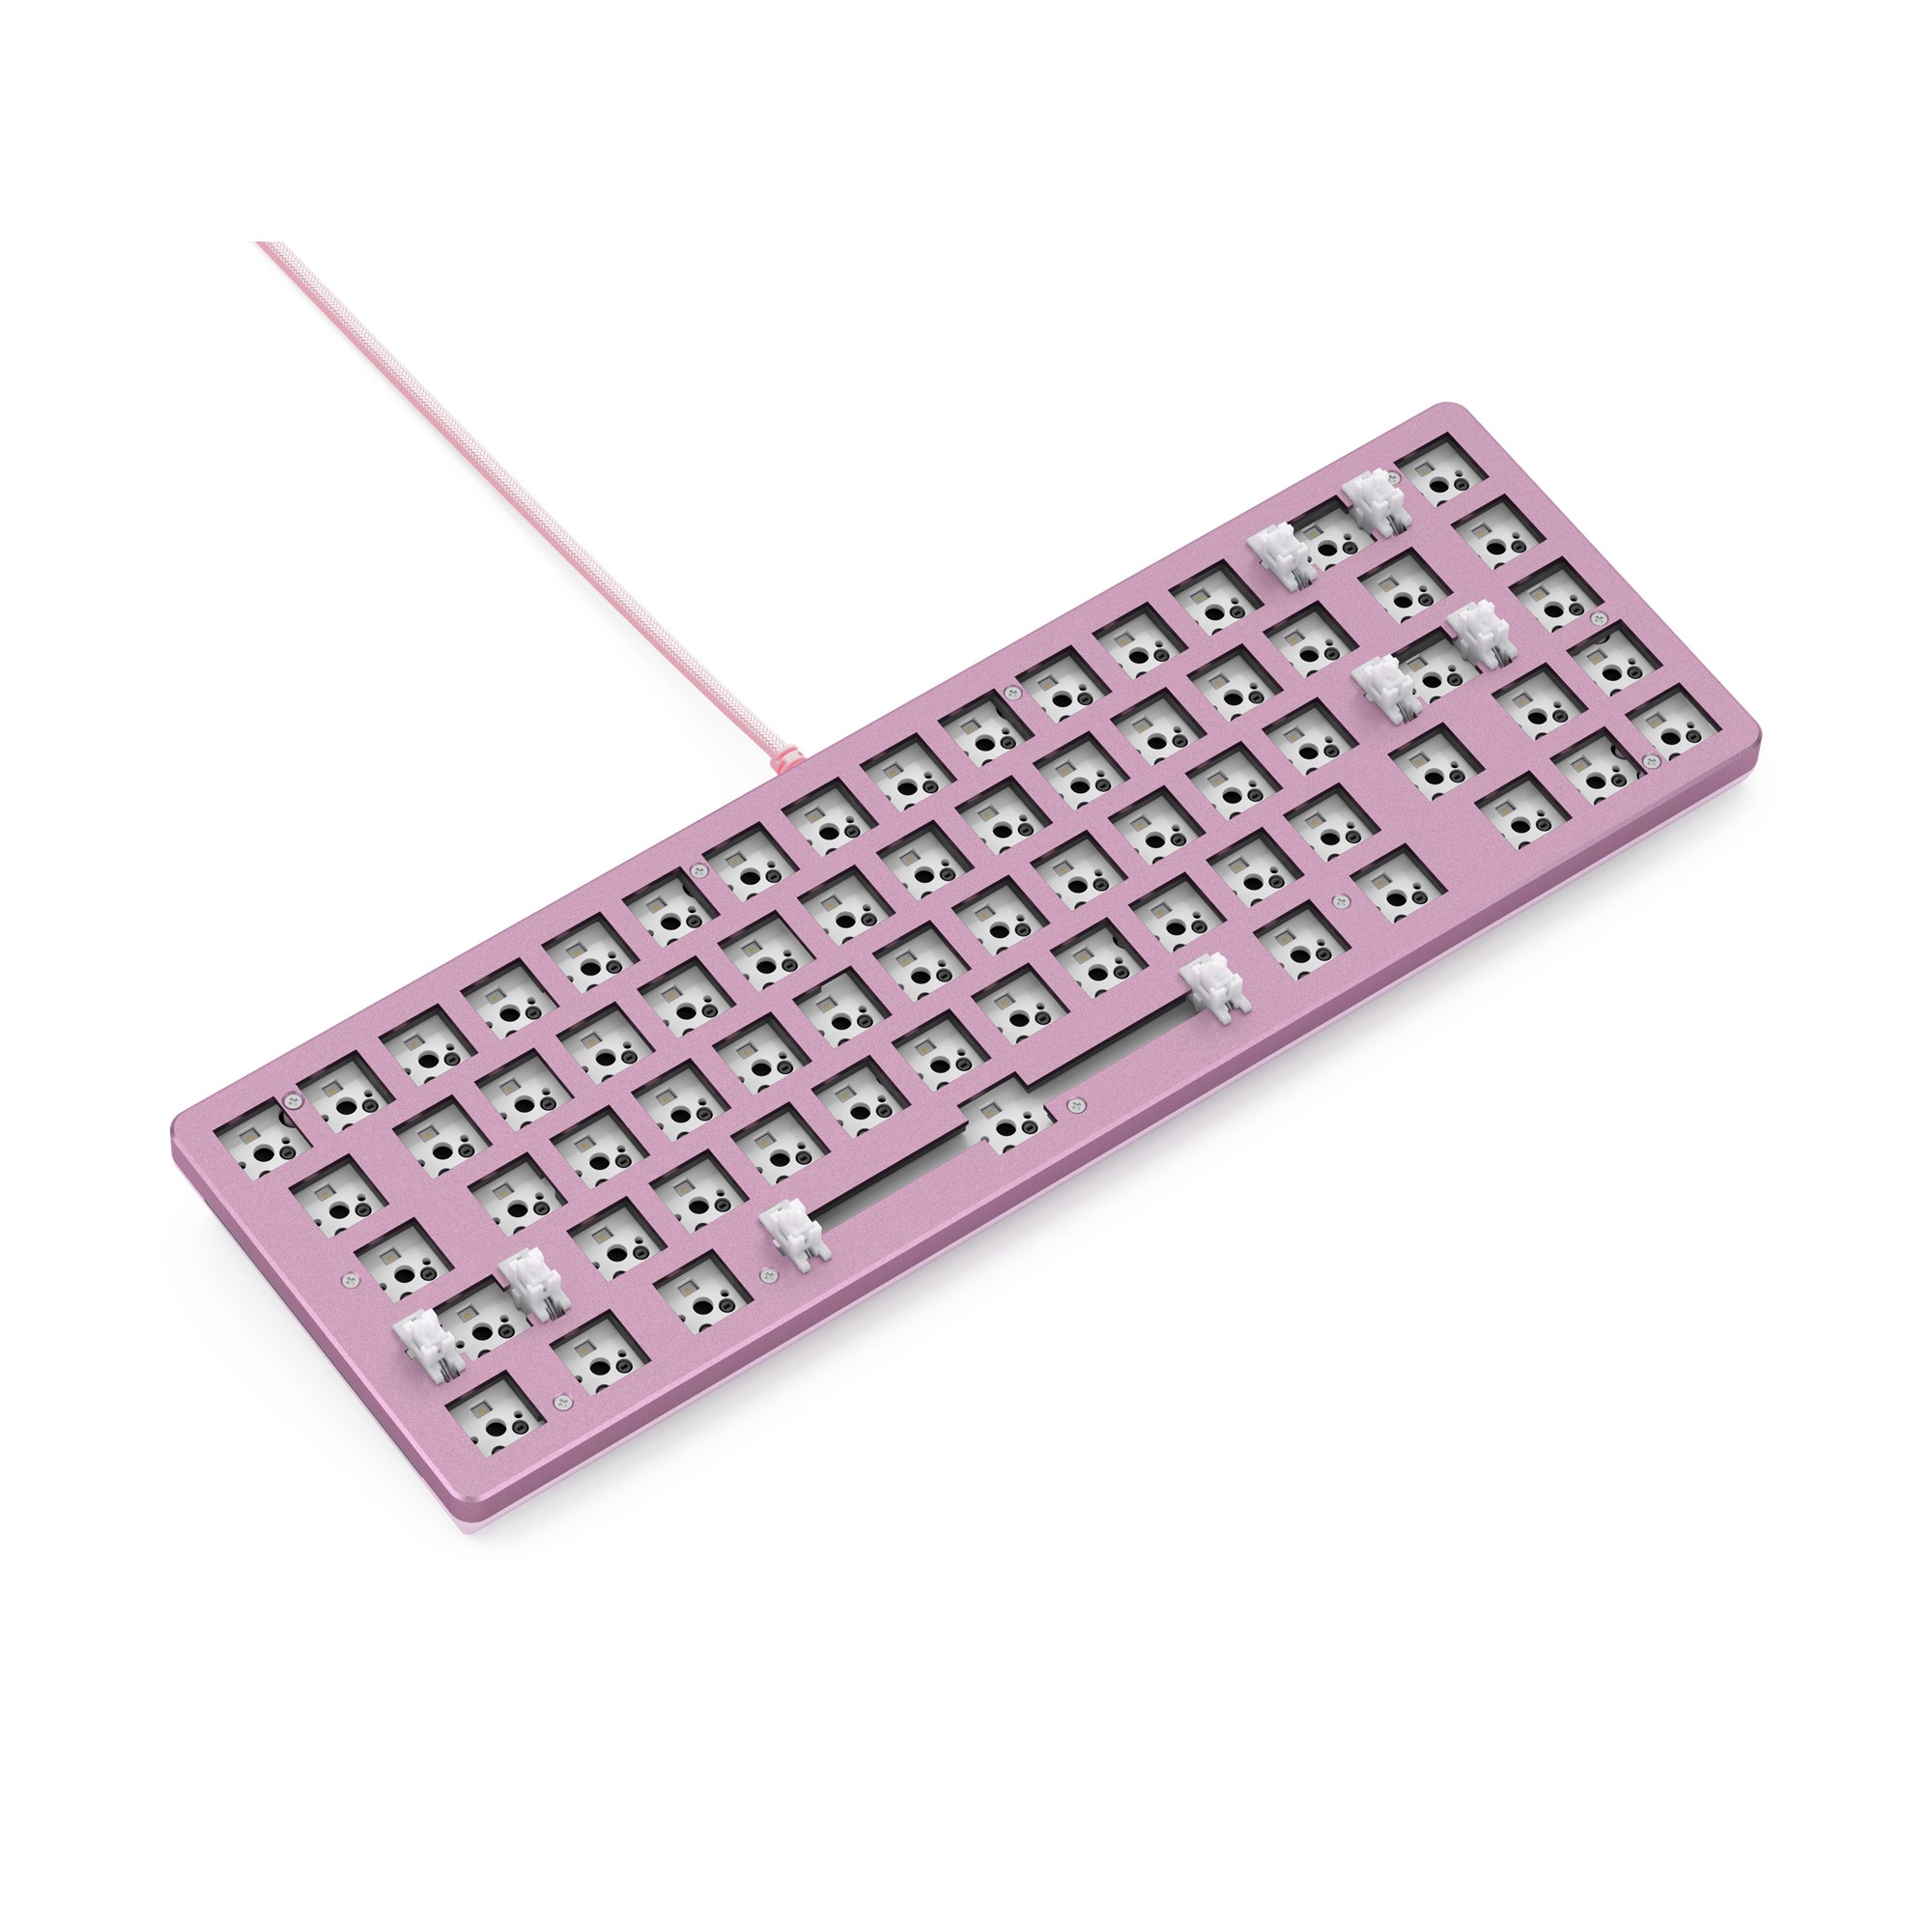 Bàn phím cơ custom Glorious GMMK 2 RGB 65% Pink (Custom Built / ANSI / Hot Swap) - Hàng chính hãng